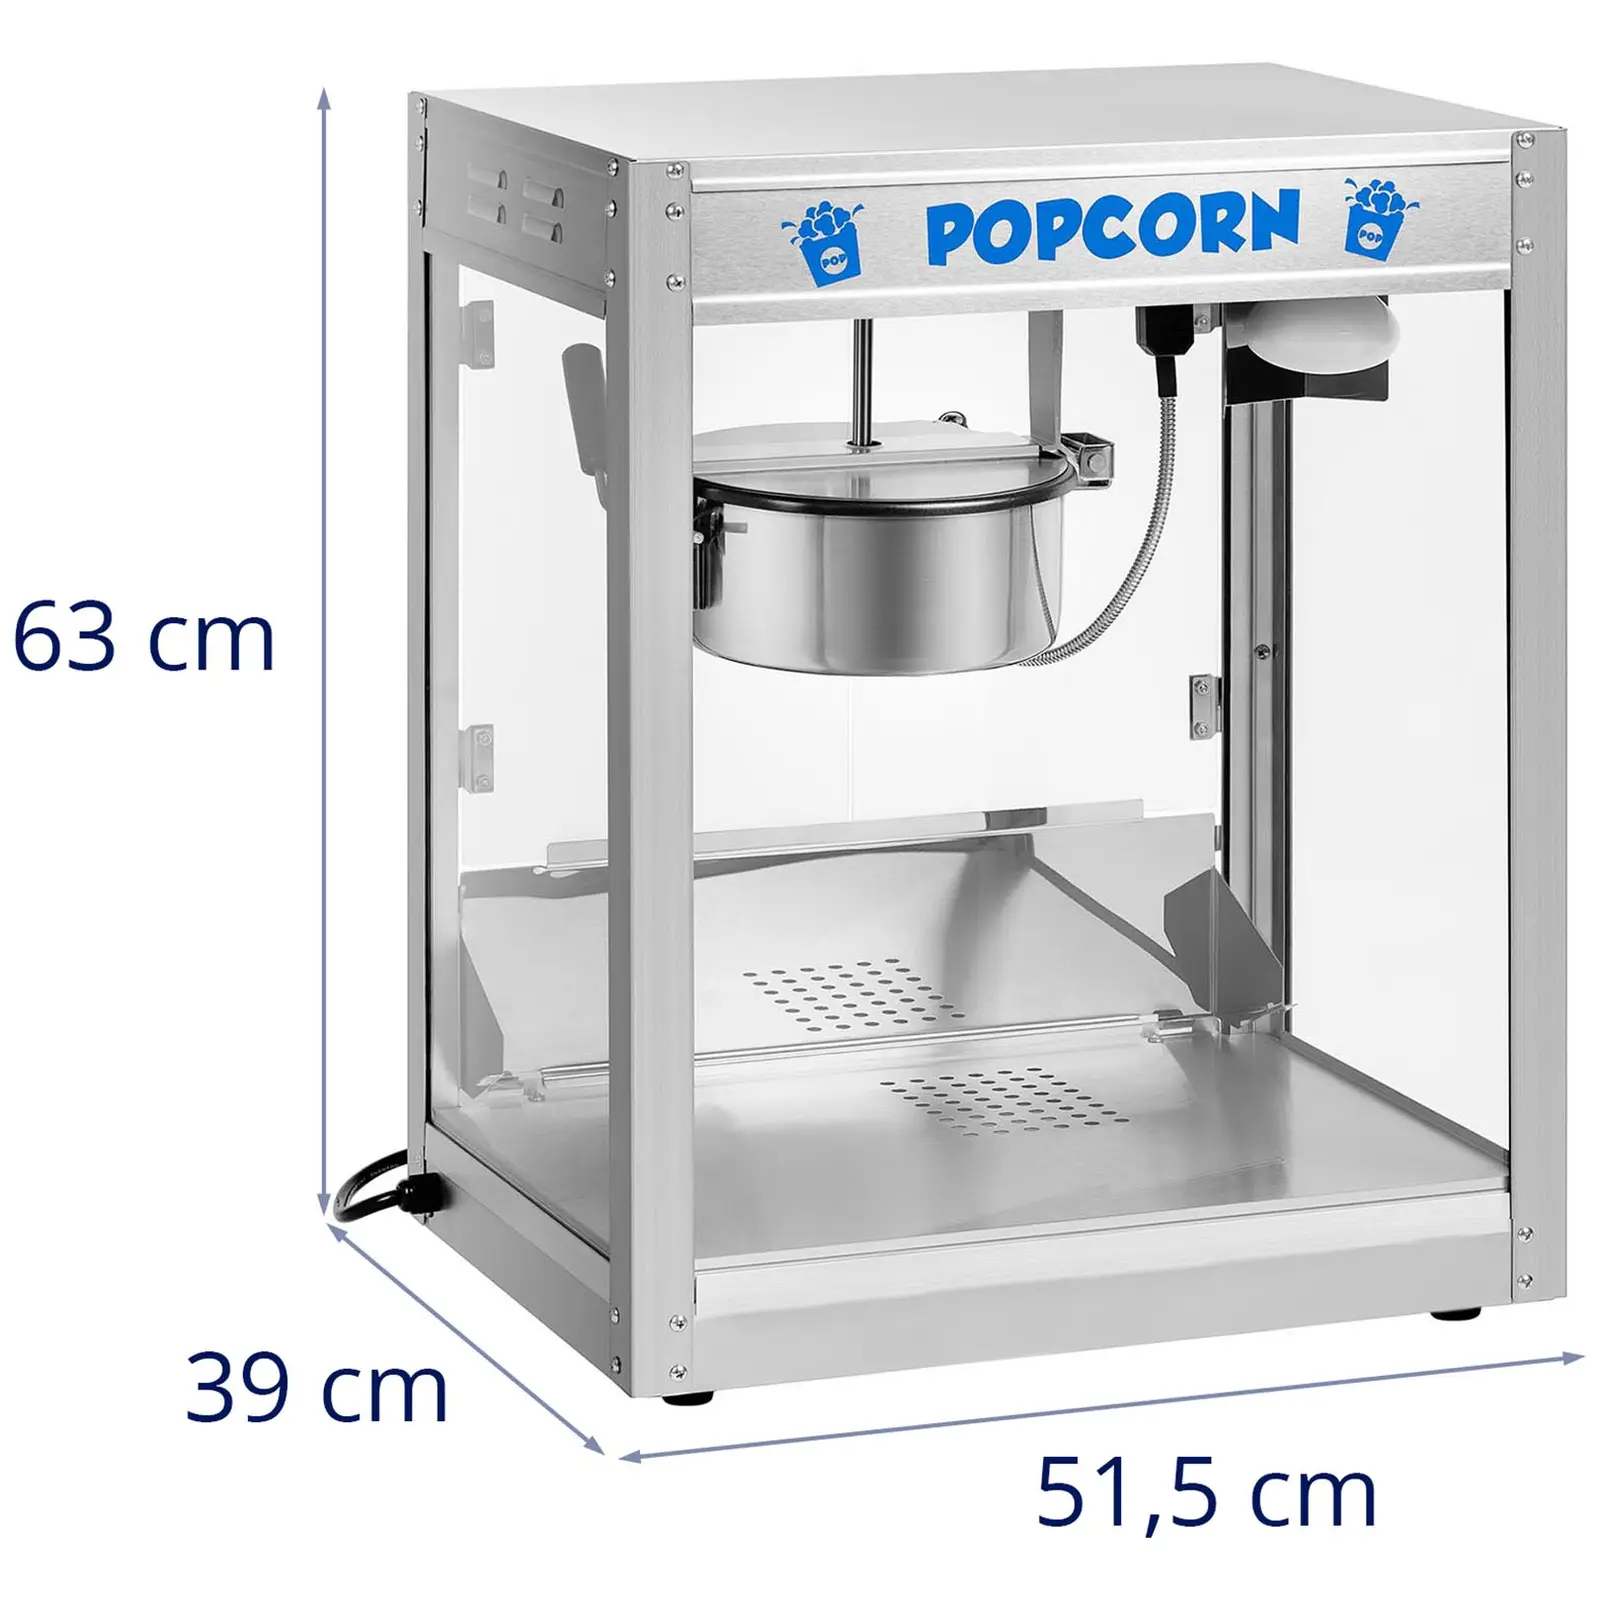 Popcorn Maker - Stainless Steel